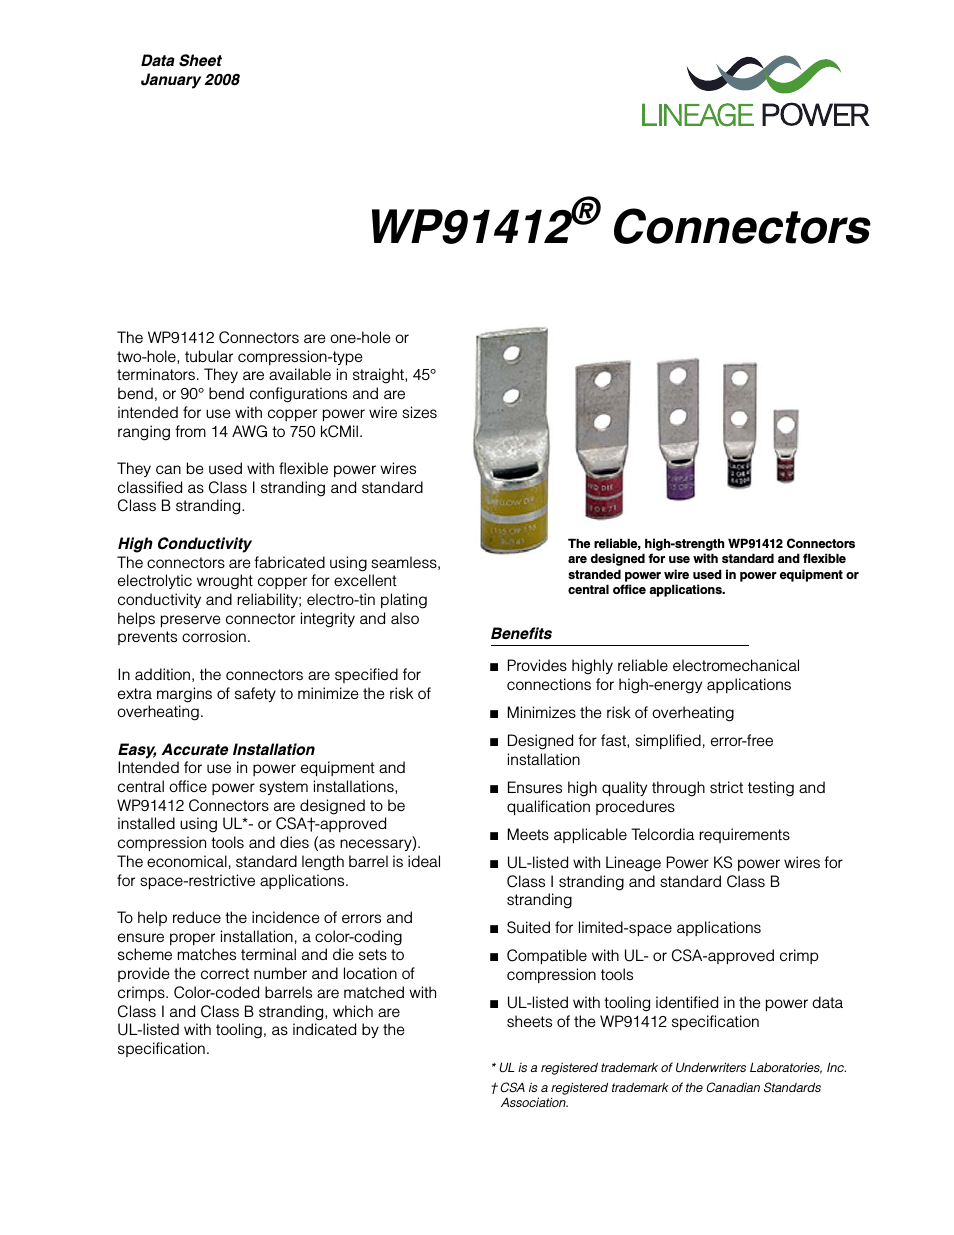 WP91412 Connectors